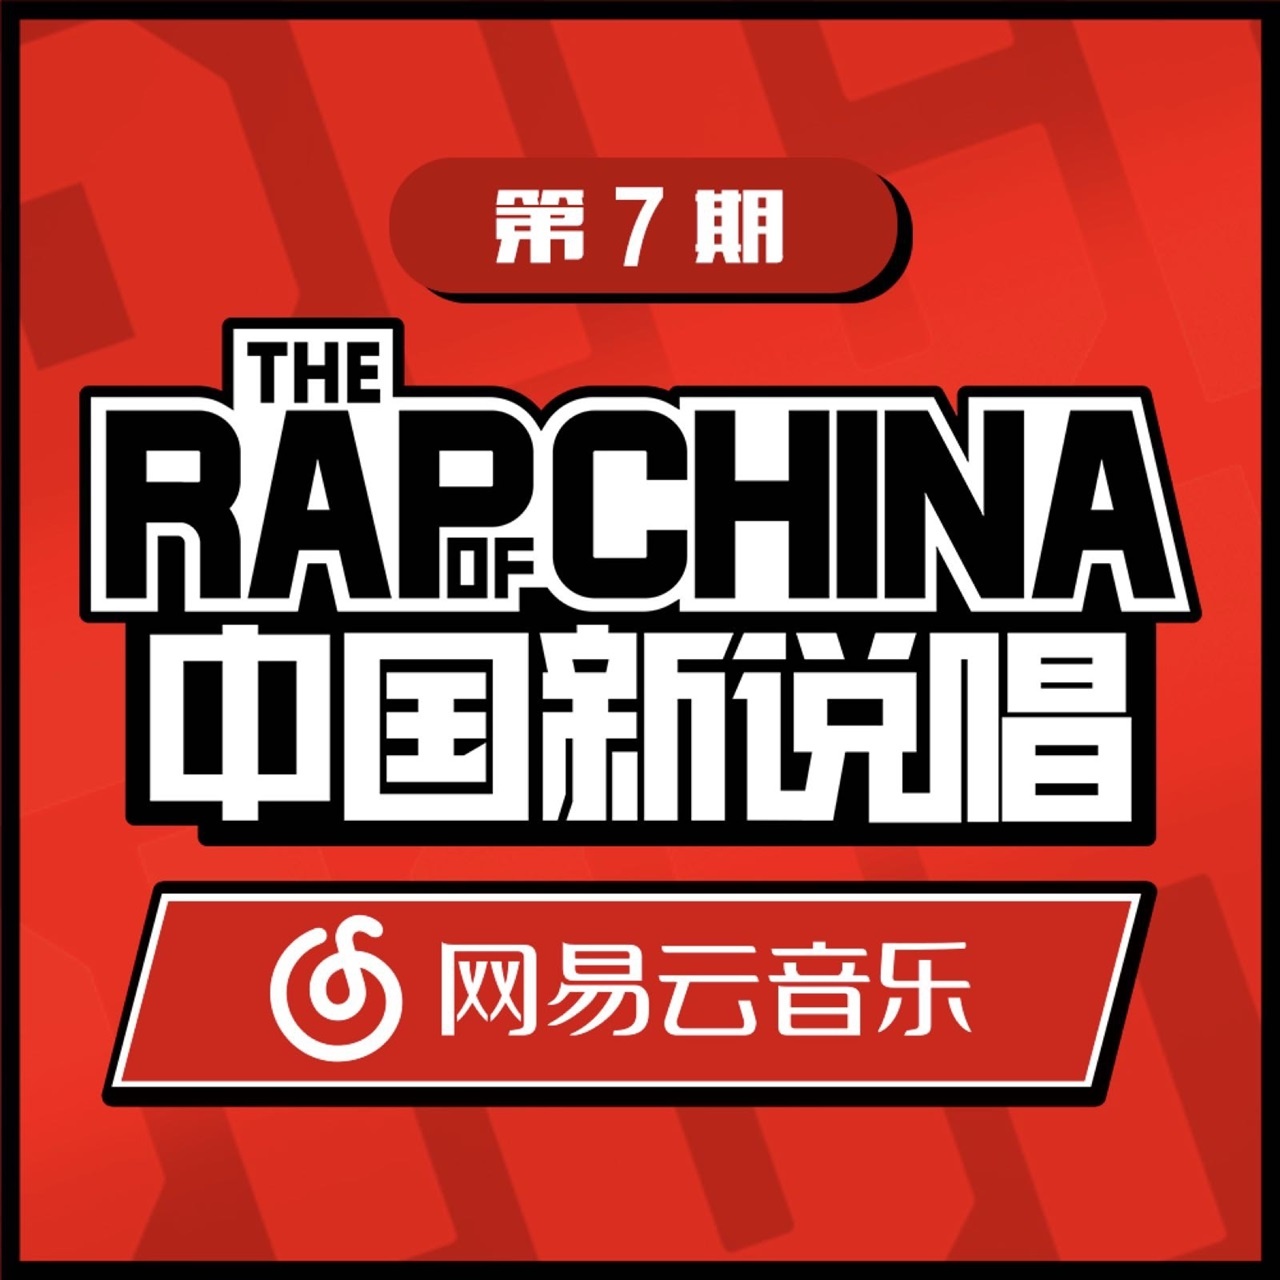 zhong guo xin shuo chang EP07 RAP07 Live